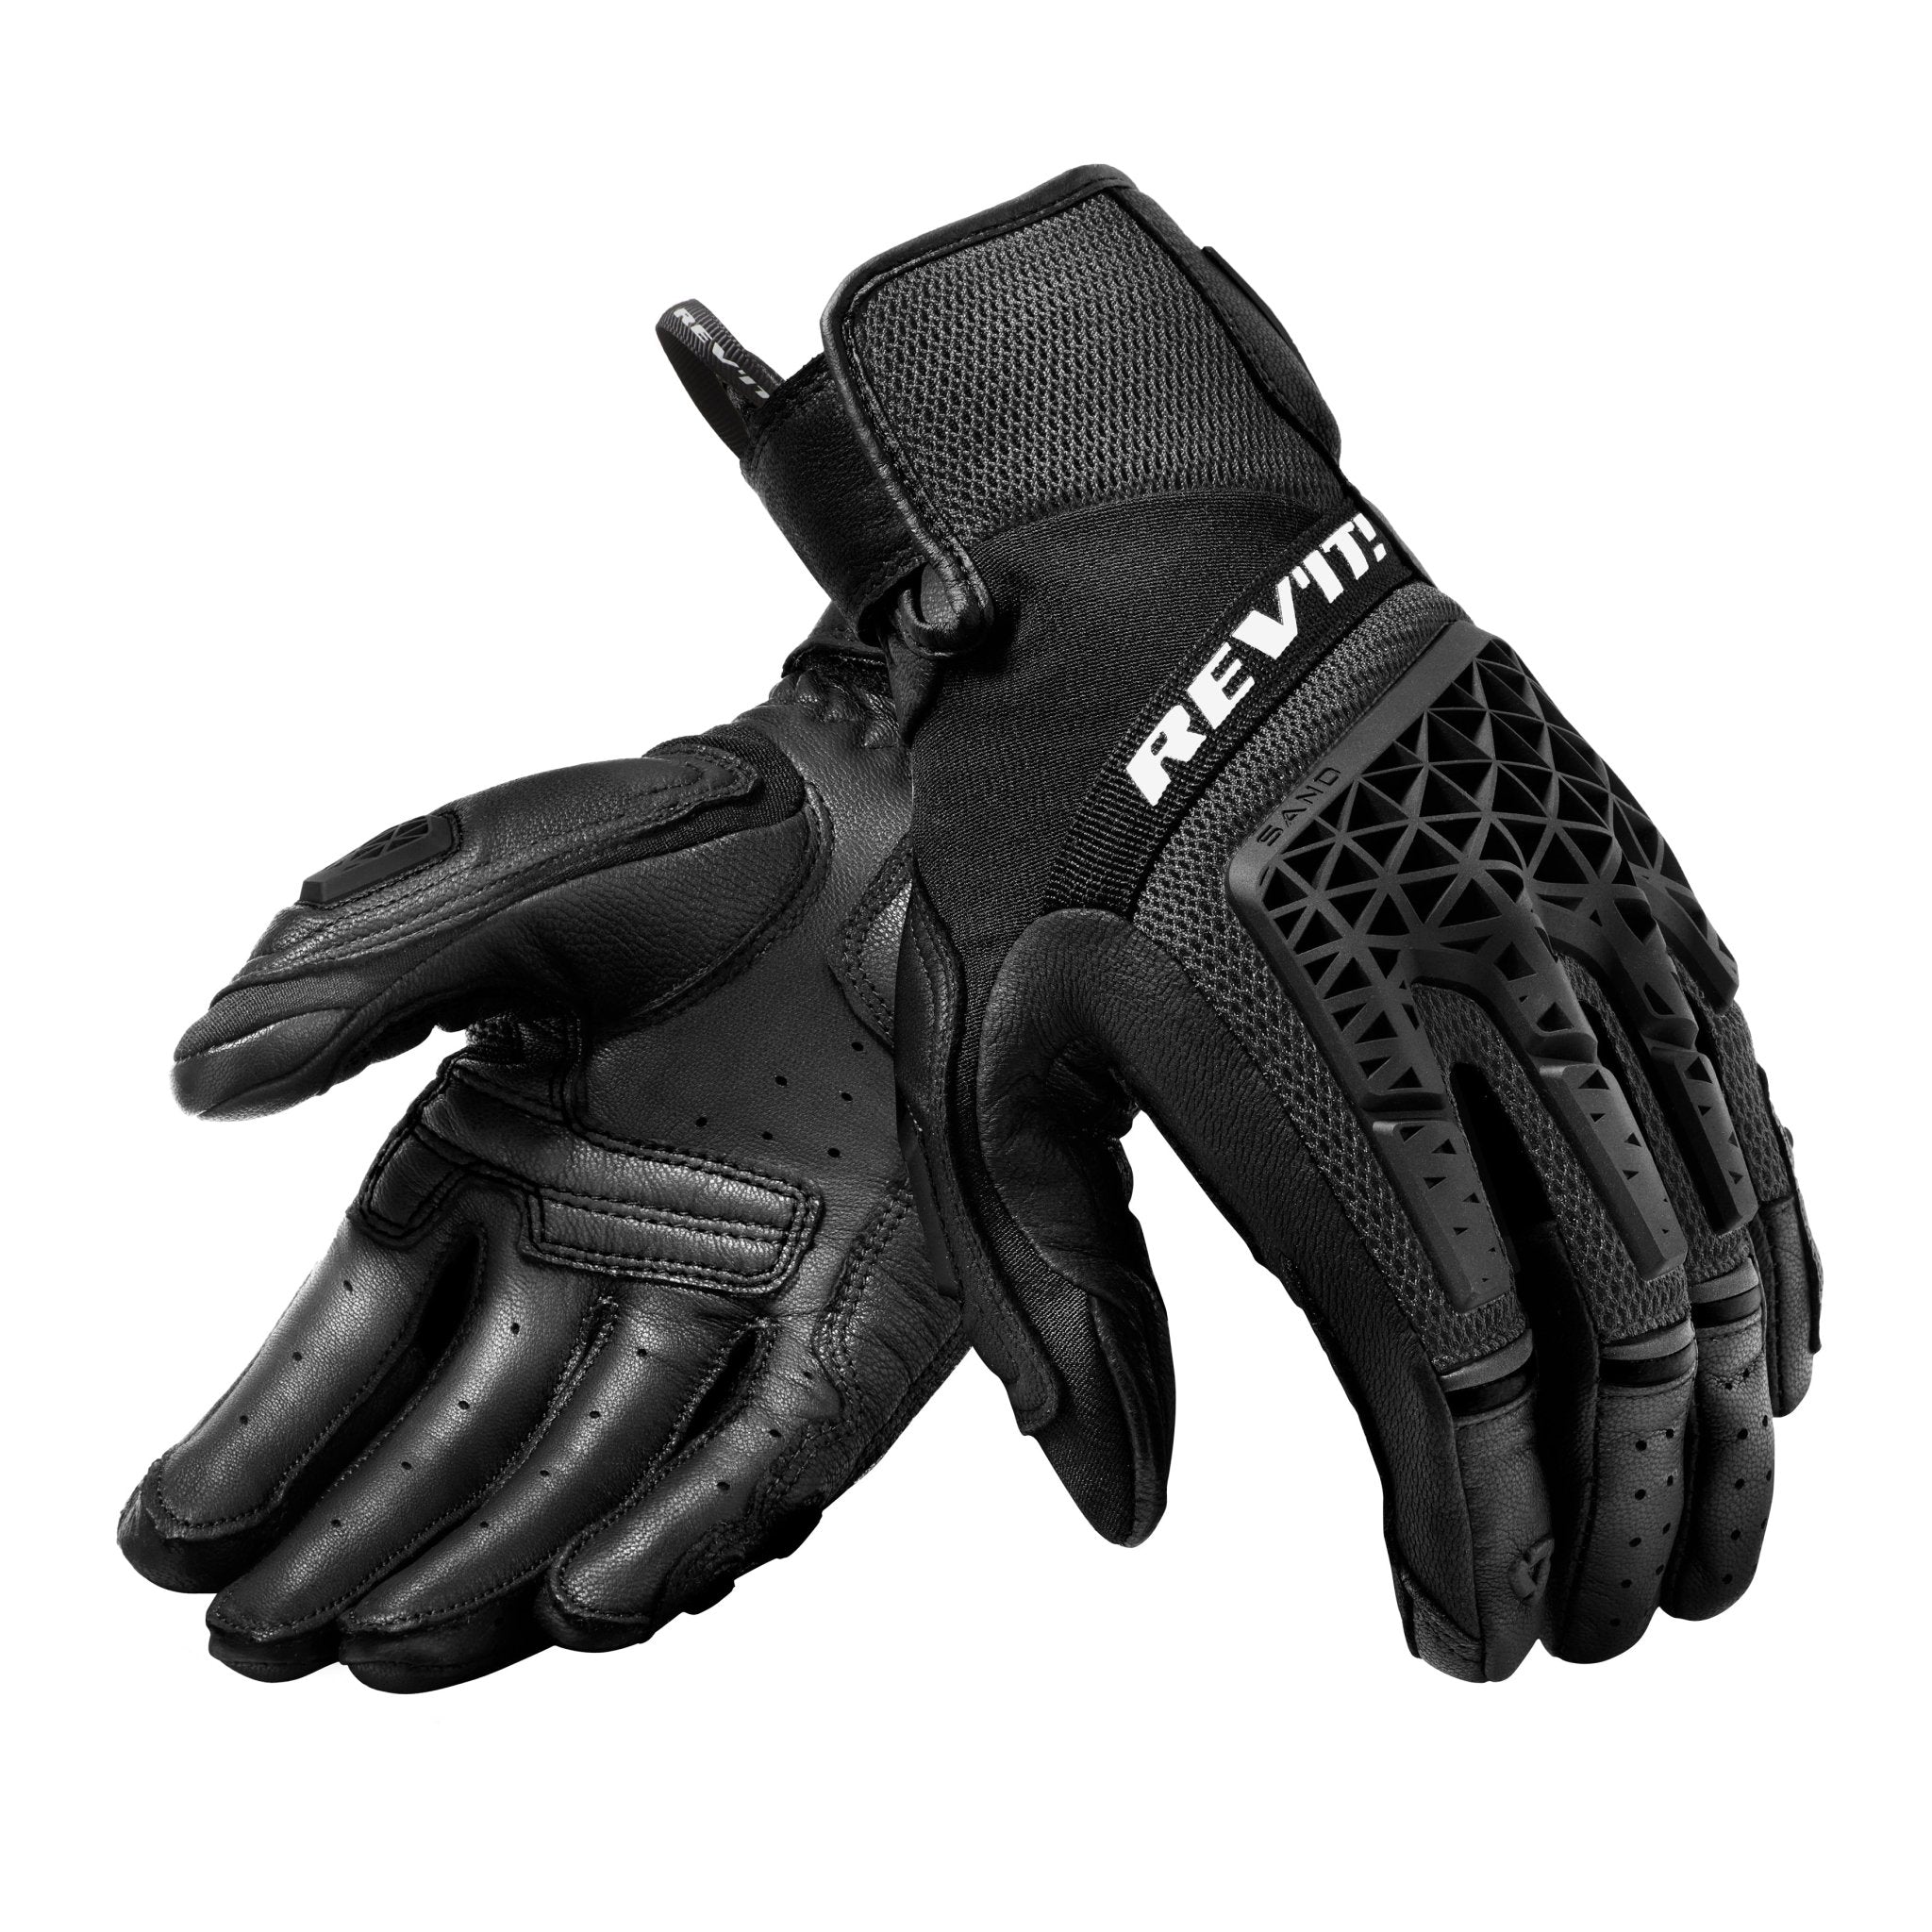 REV'IT! | Sand 4 Men's Gloves - Black - Gloves - Peak Moto